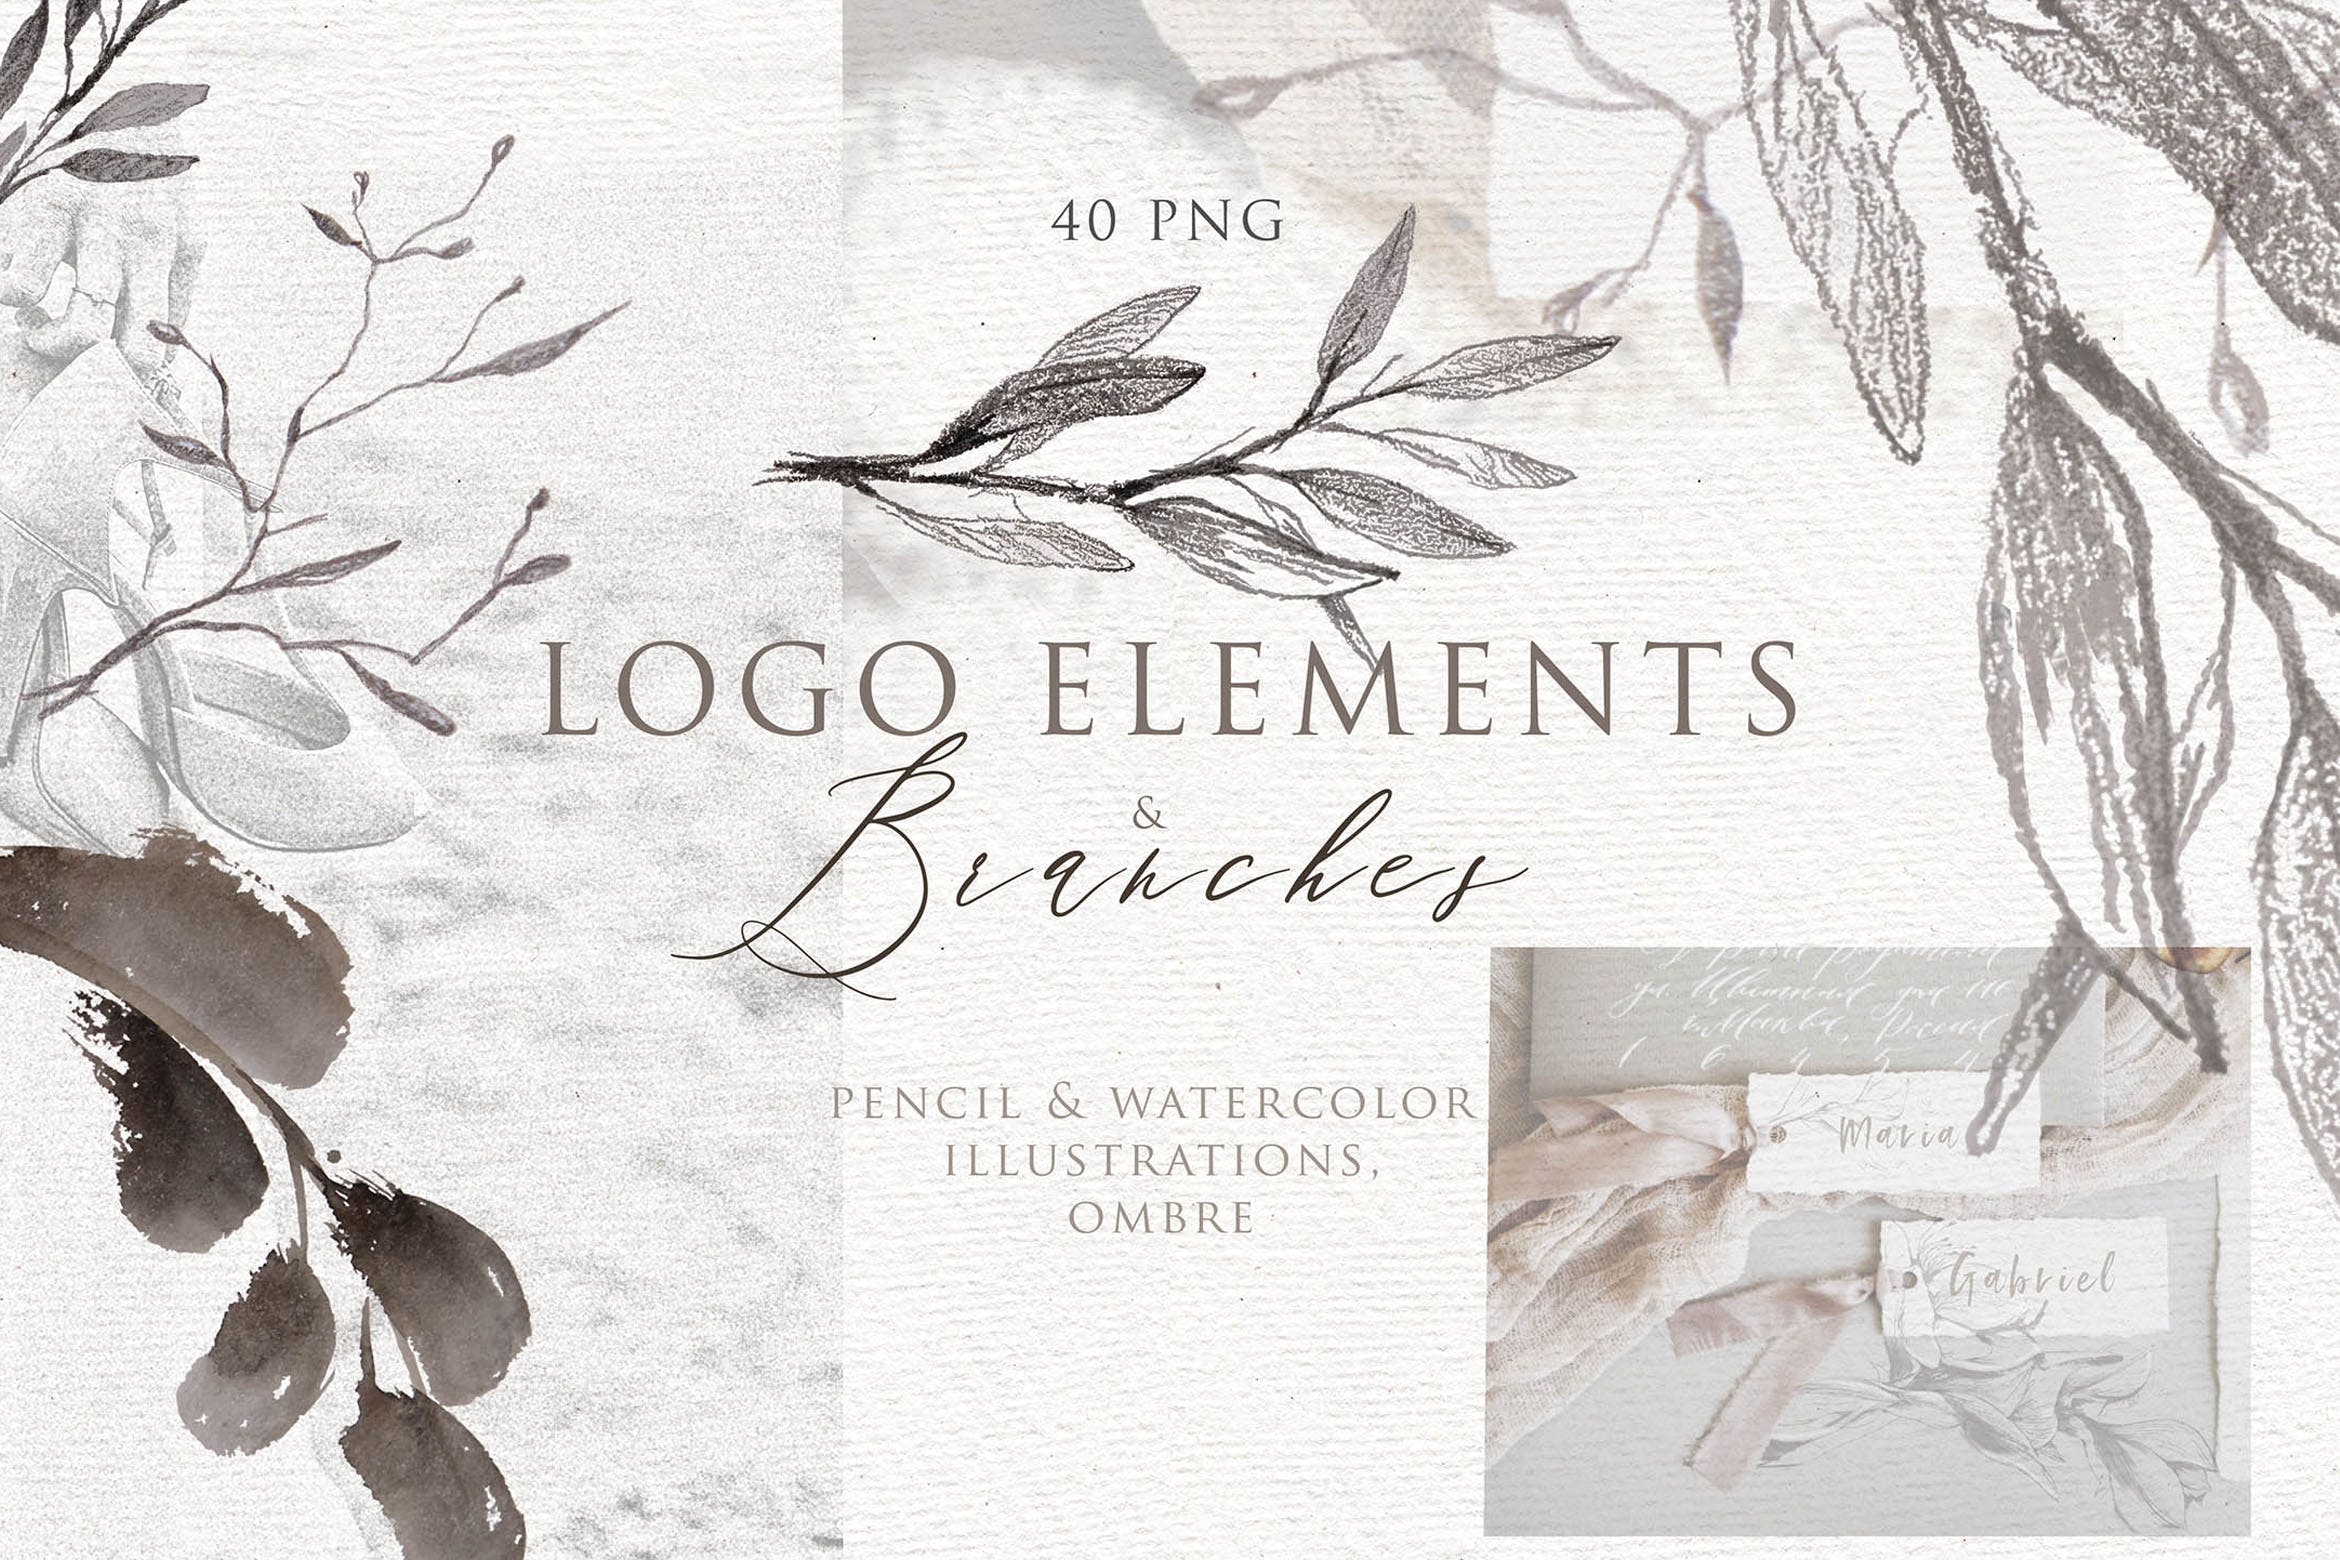 优雅风格植物Logo标志元素设计素材v3 BOTANICAL LOGO ELEMENTS vol.3插图